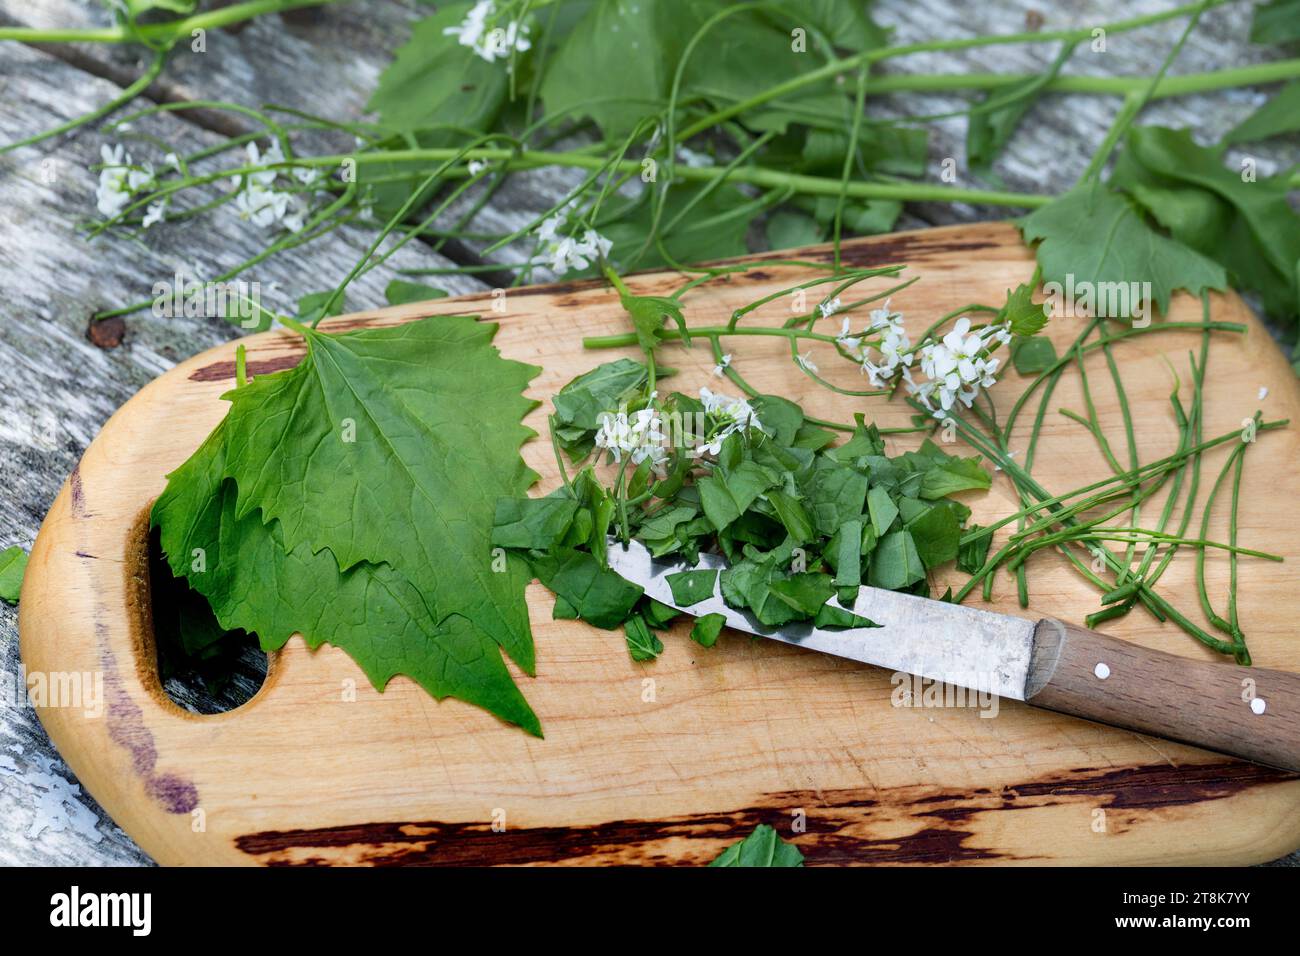 Senape all'aglio, siepi aglio, crack-by-the-hedge (Alliaria petiolata), raccolta senape all'aglio tagliata con un coltello Foto Stock